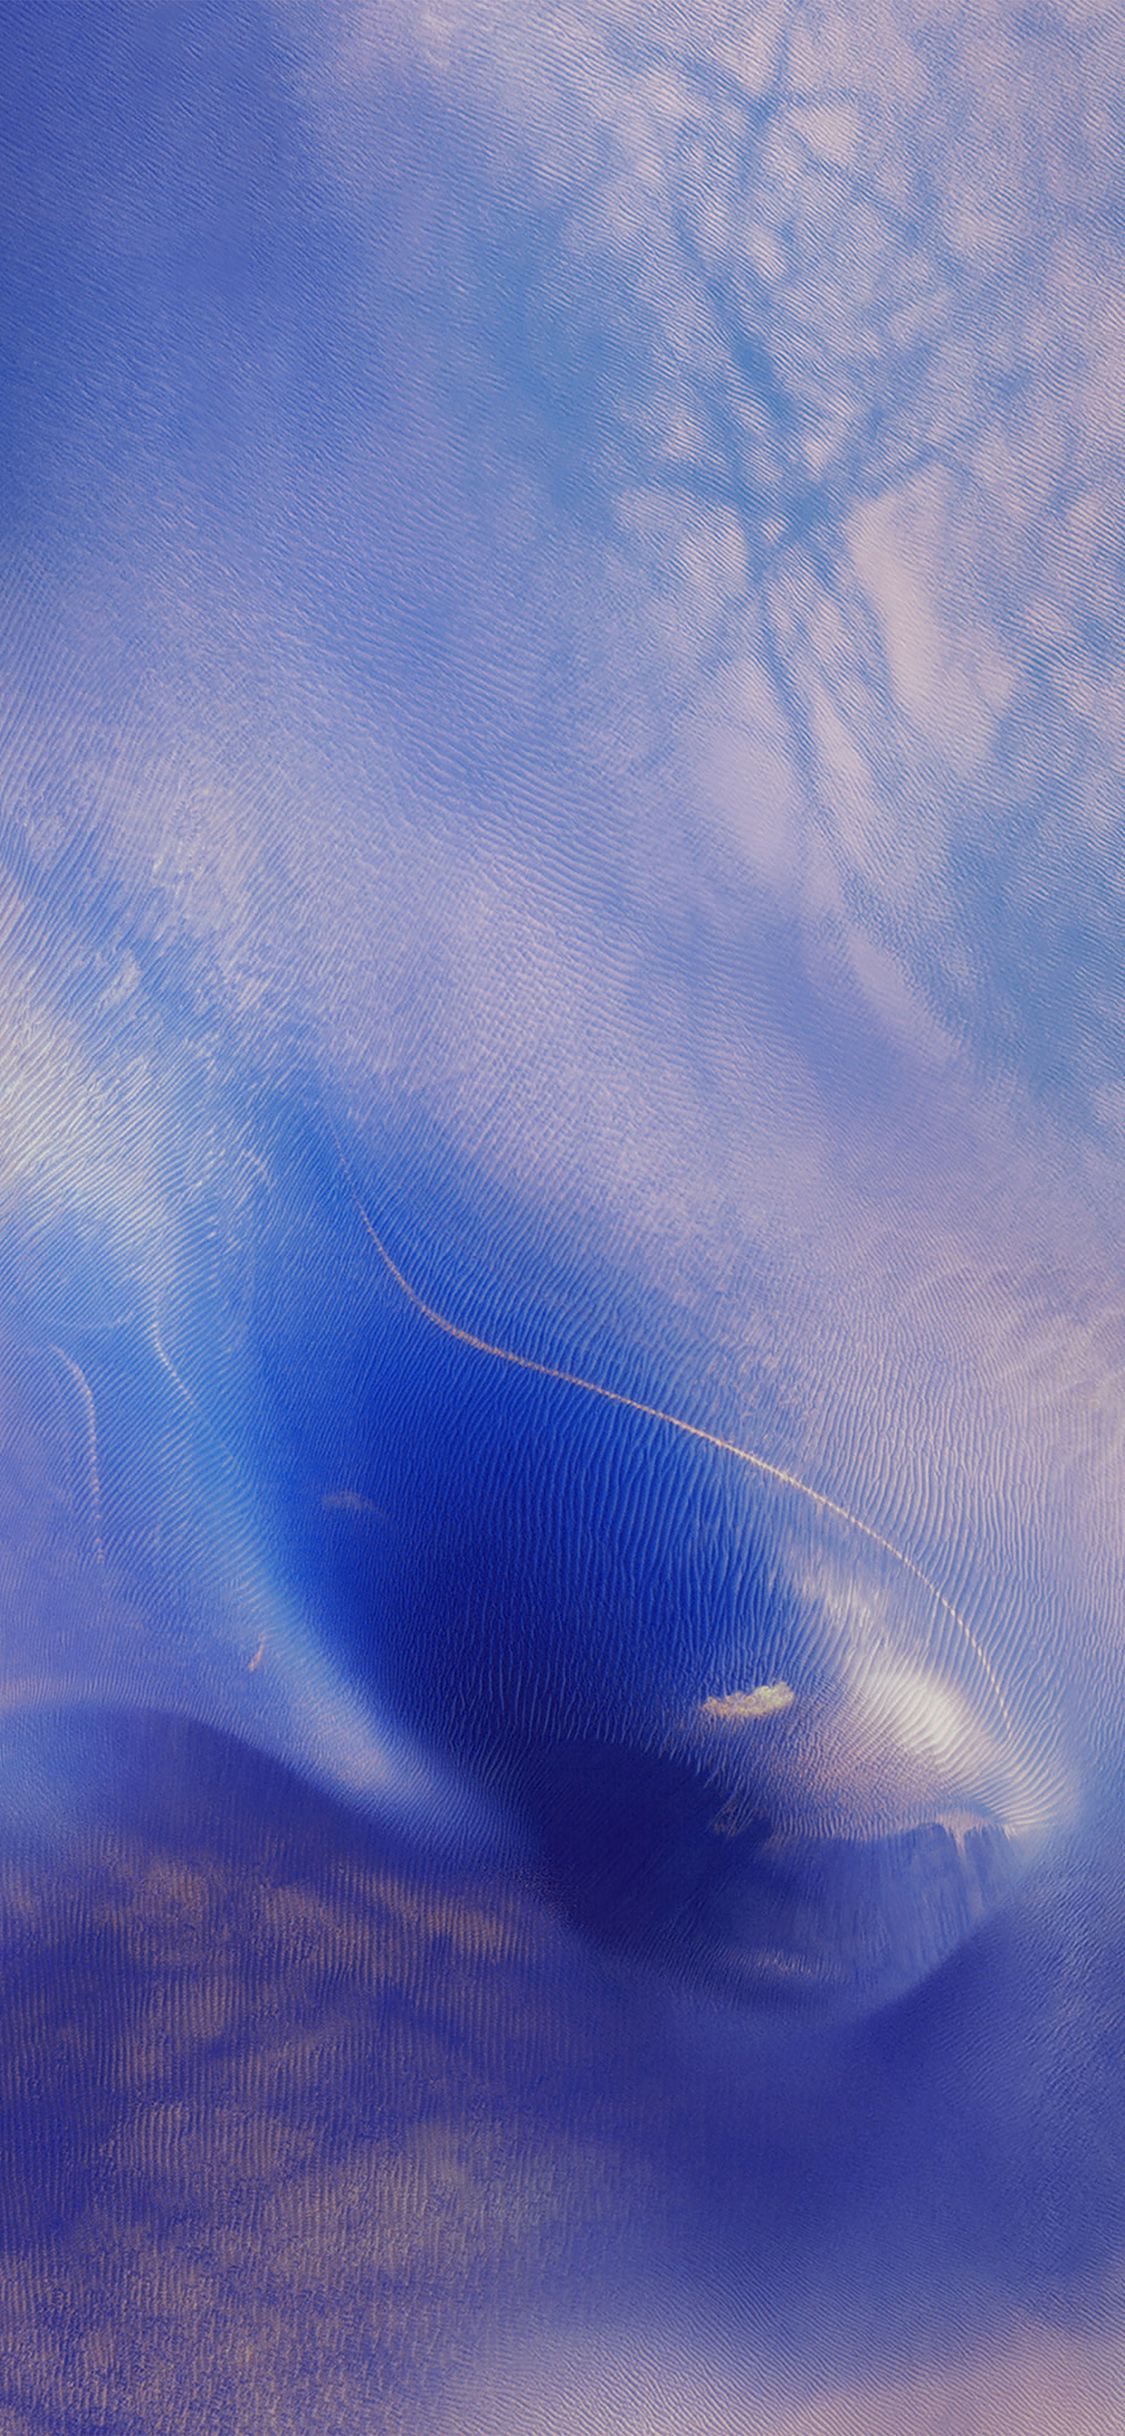 iPhone X wallpaper. iphone6s ios9 default still art texture ocean blue